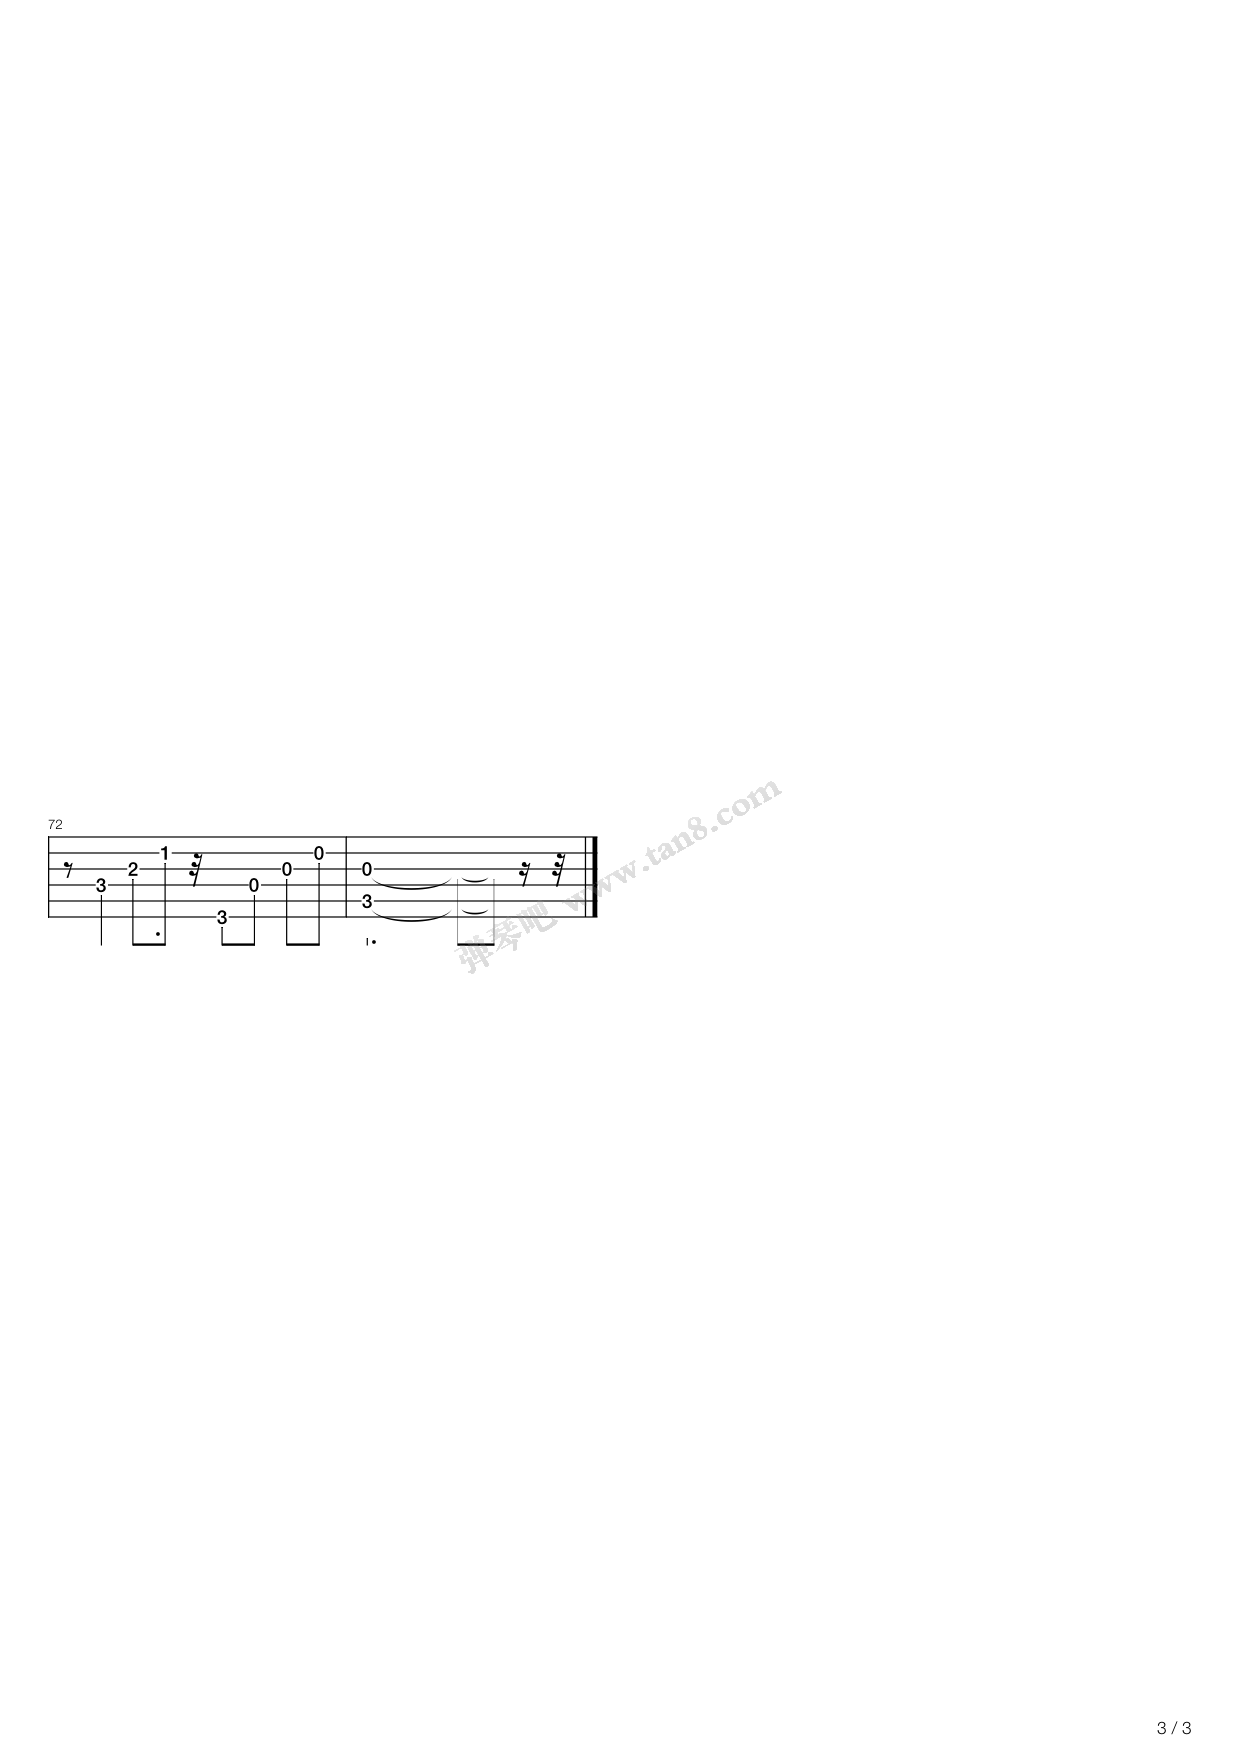 Canon in D Fingerstyle Tabs - Johann Pachelbel | Dondee's Guitar